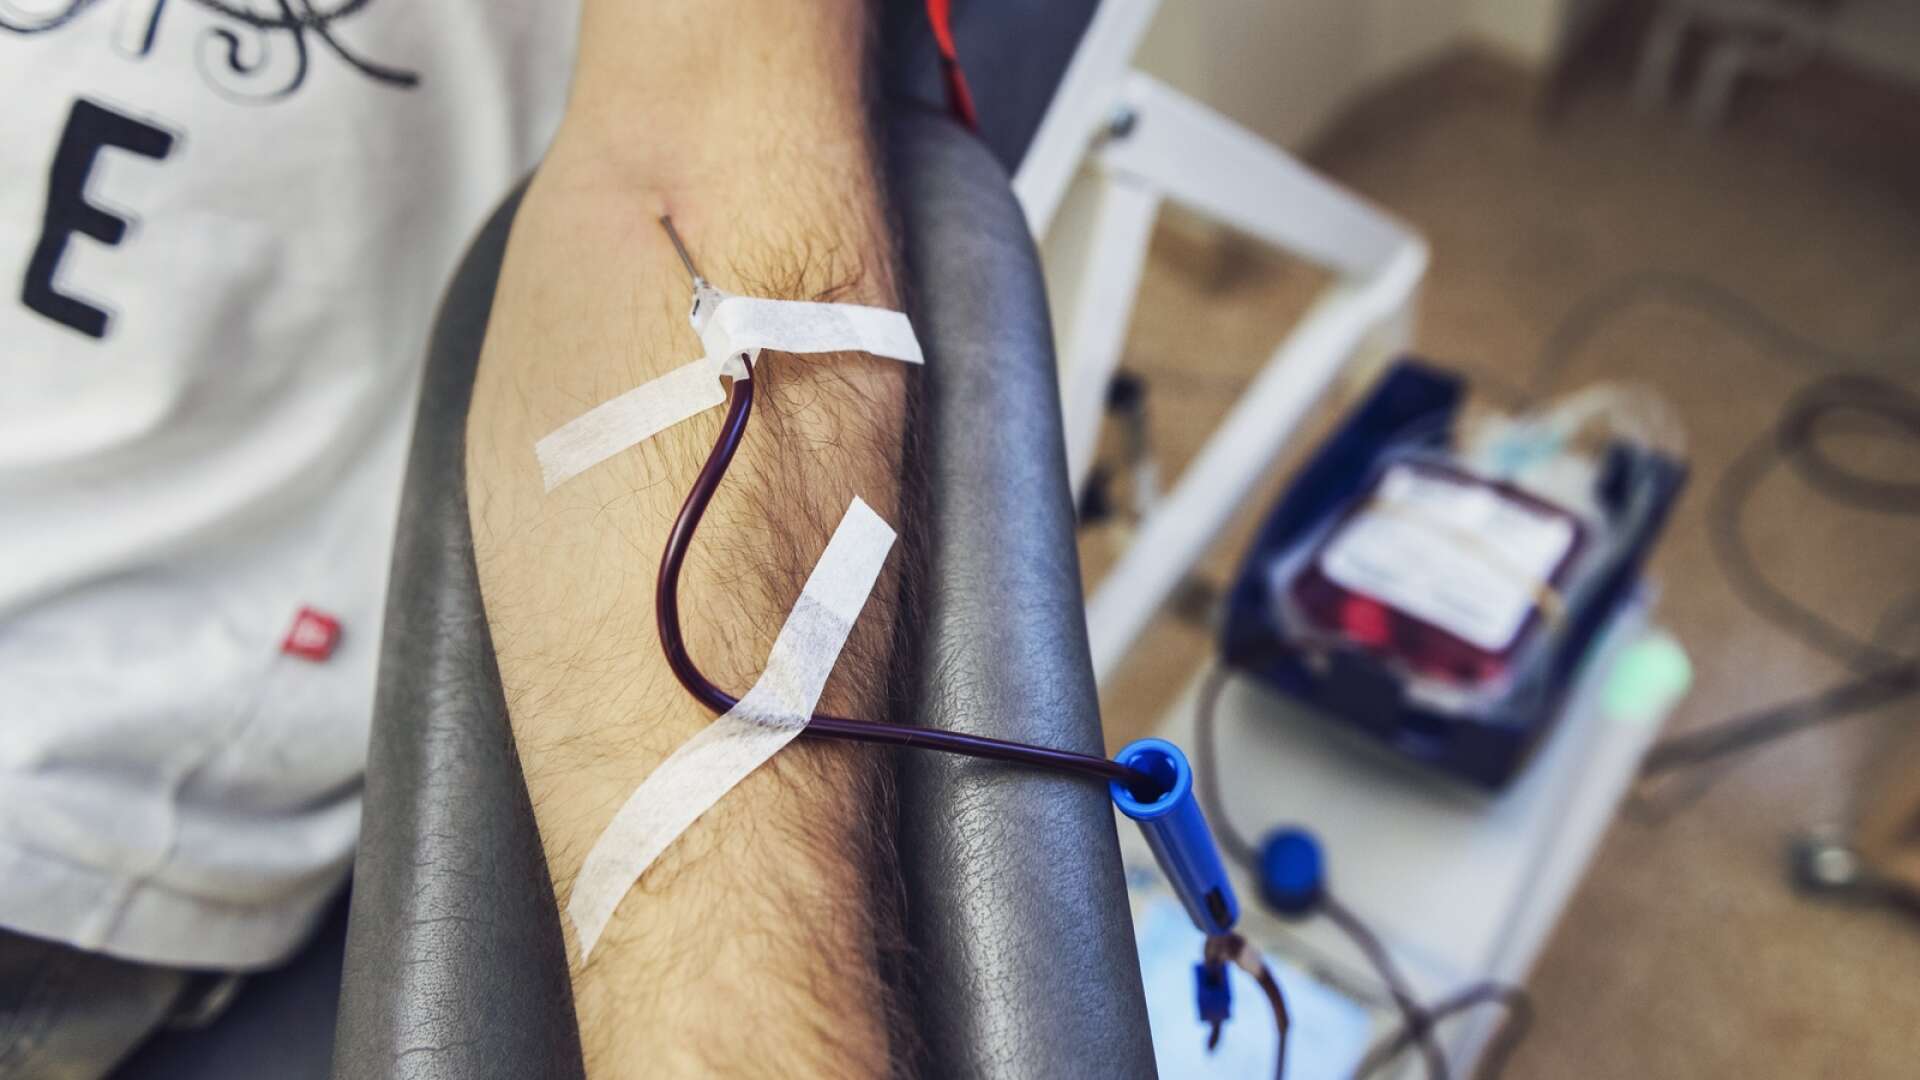 För blodgivning är en oerhört viktig del av hälso- och sjukvårdssystemet. Den räddar liv och hjälper människor i nöd, skriver Rebecka Ingsmy med flera.